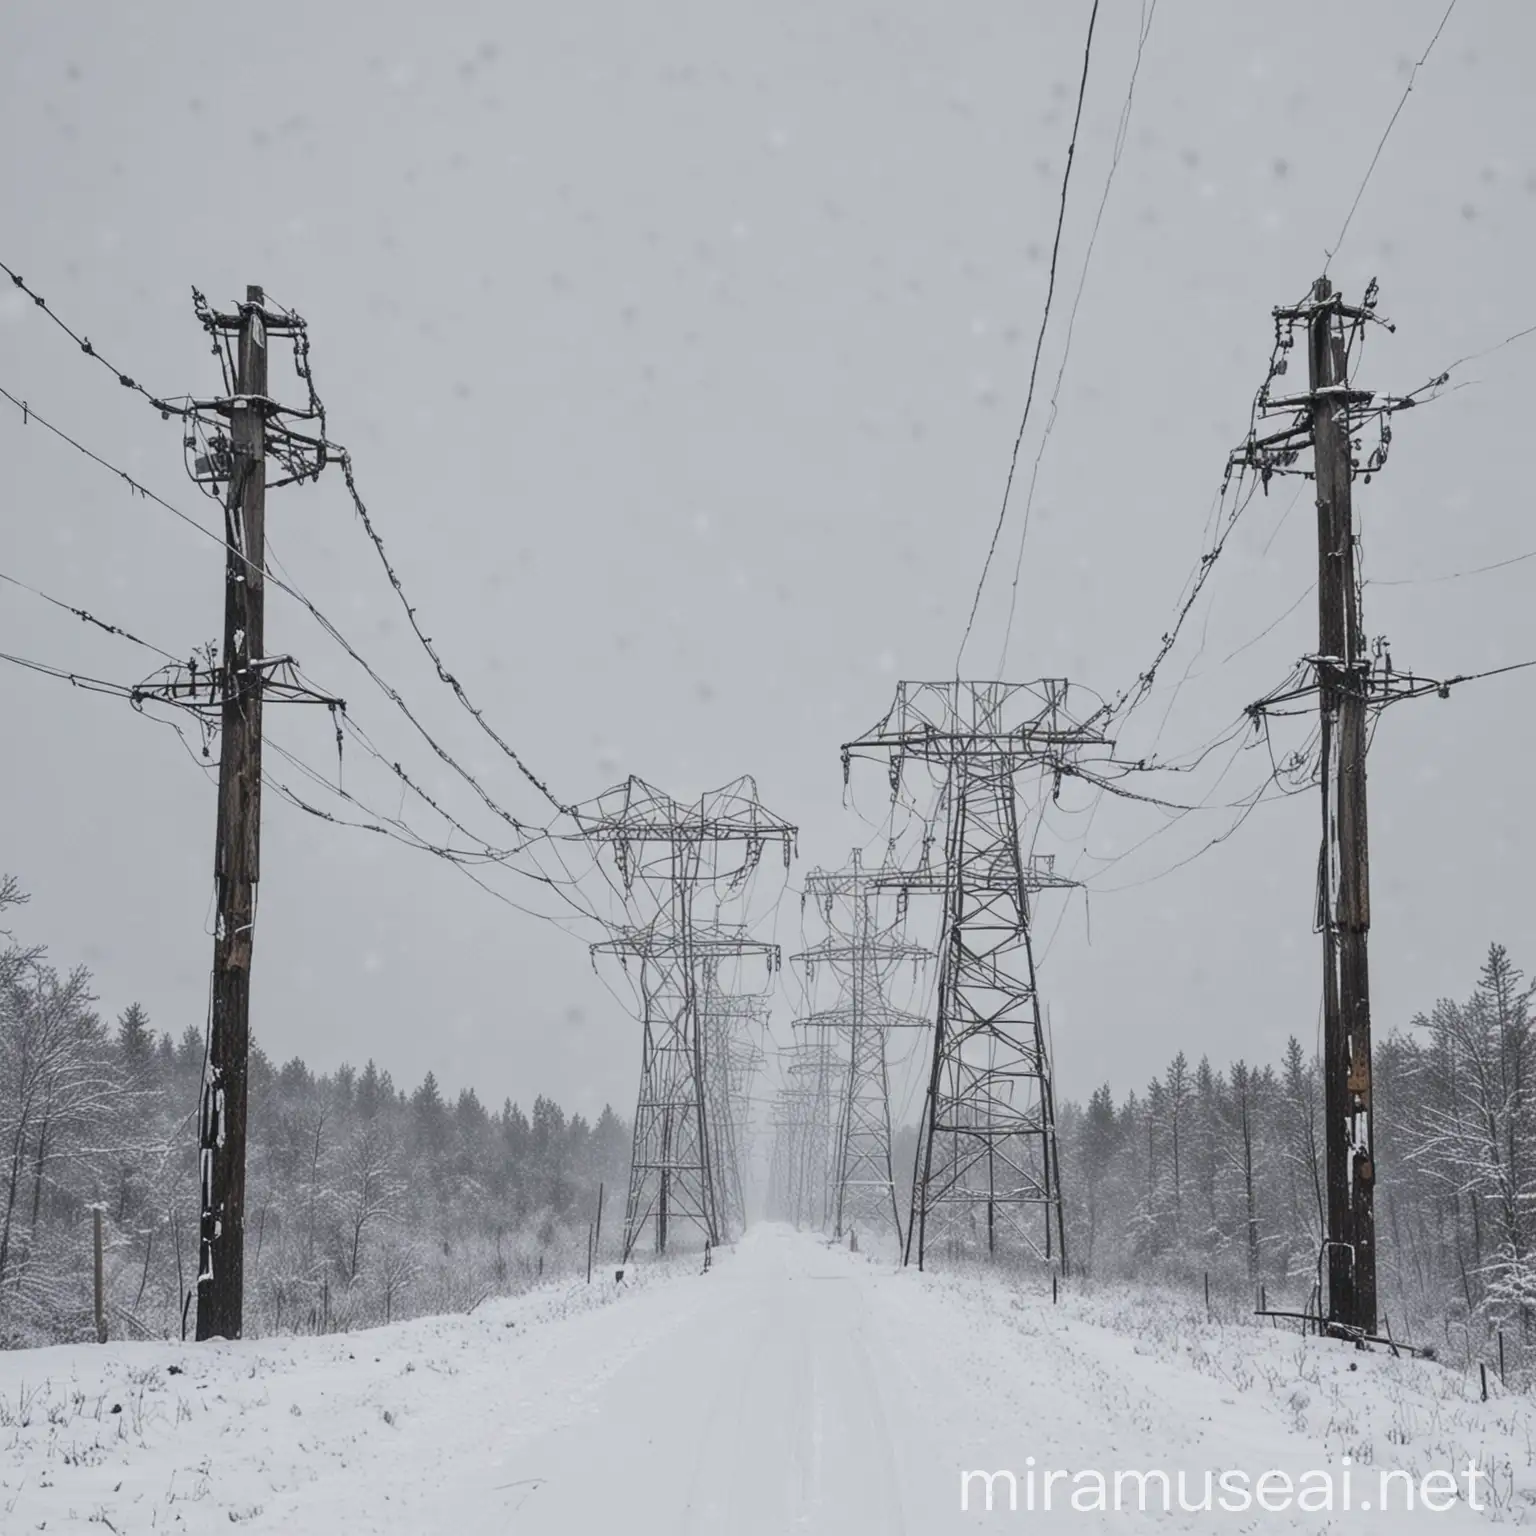 输电线路绝缘子工作在 雪天环境
